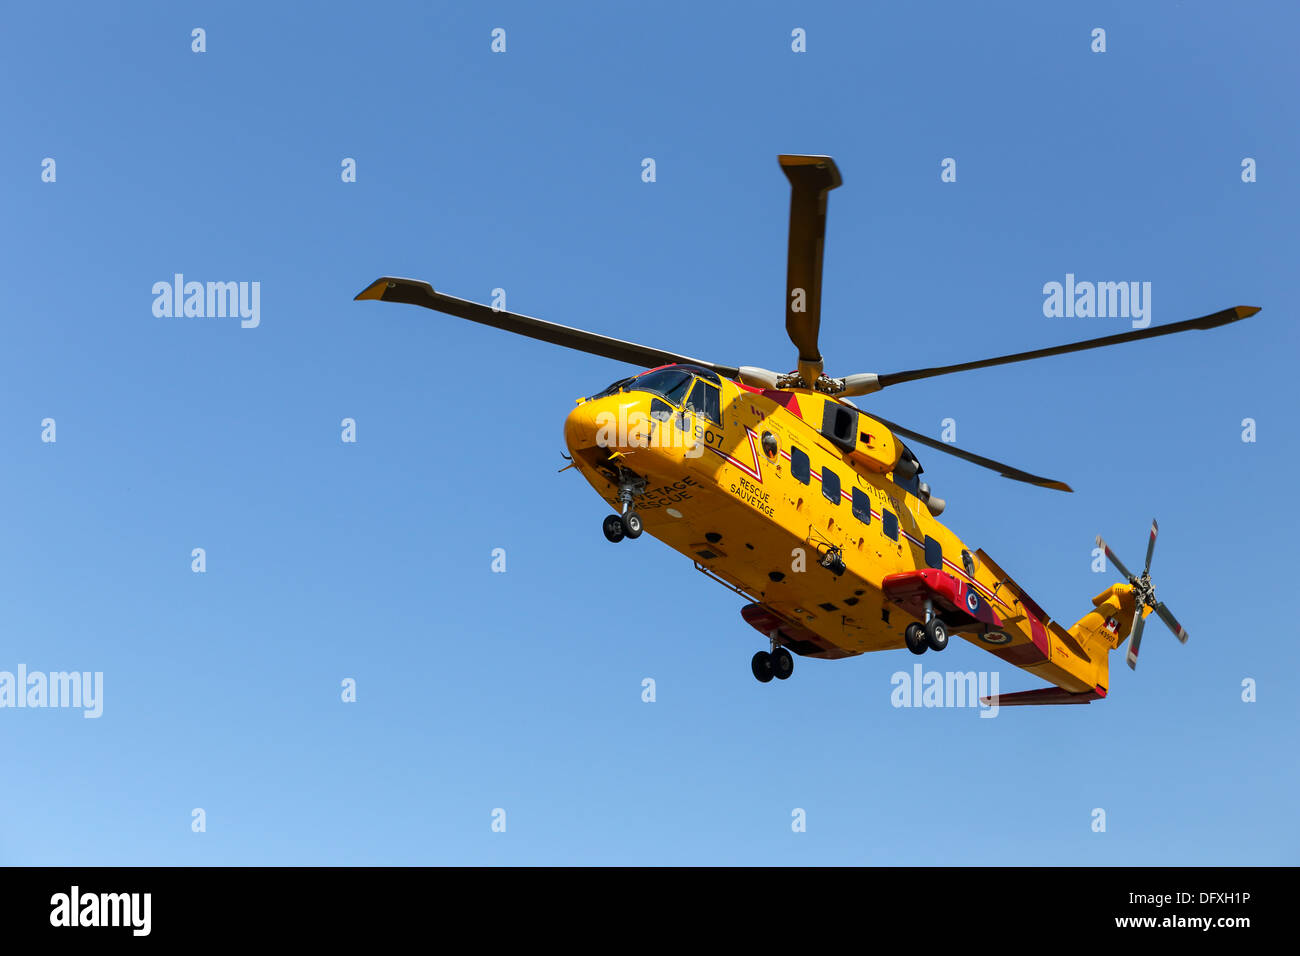 Forze canadesi AgustaWestland CH-149 Cormorant elicottero decrescente - Nessuna vendita su Alamy o in qualsiasi altro luogo Foto Stock